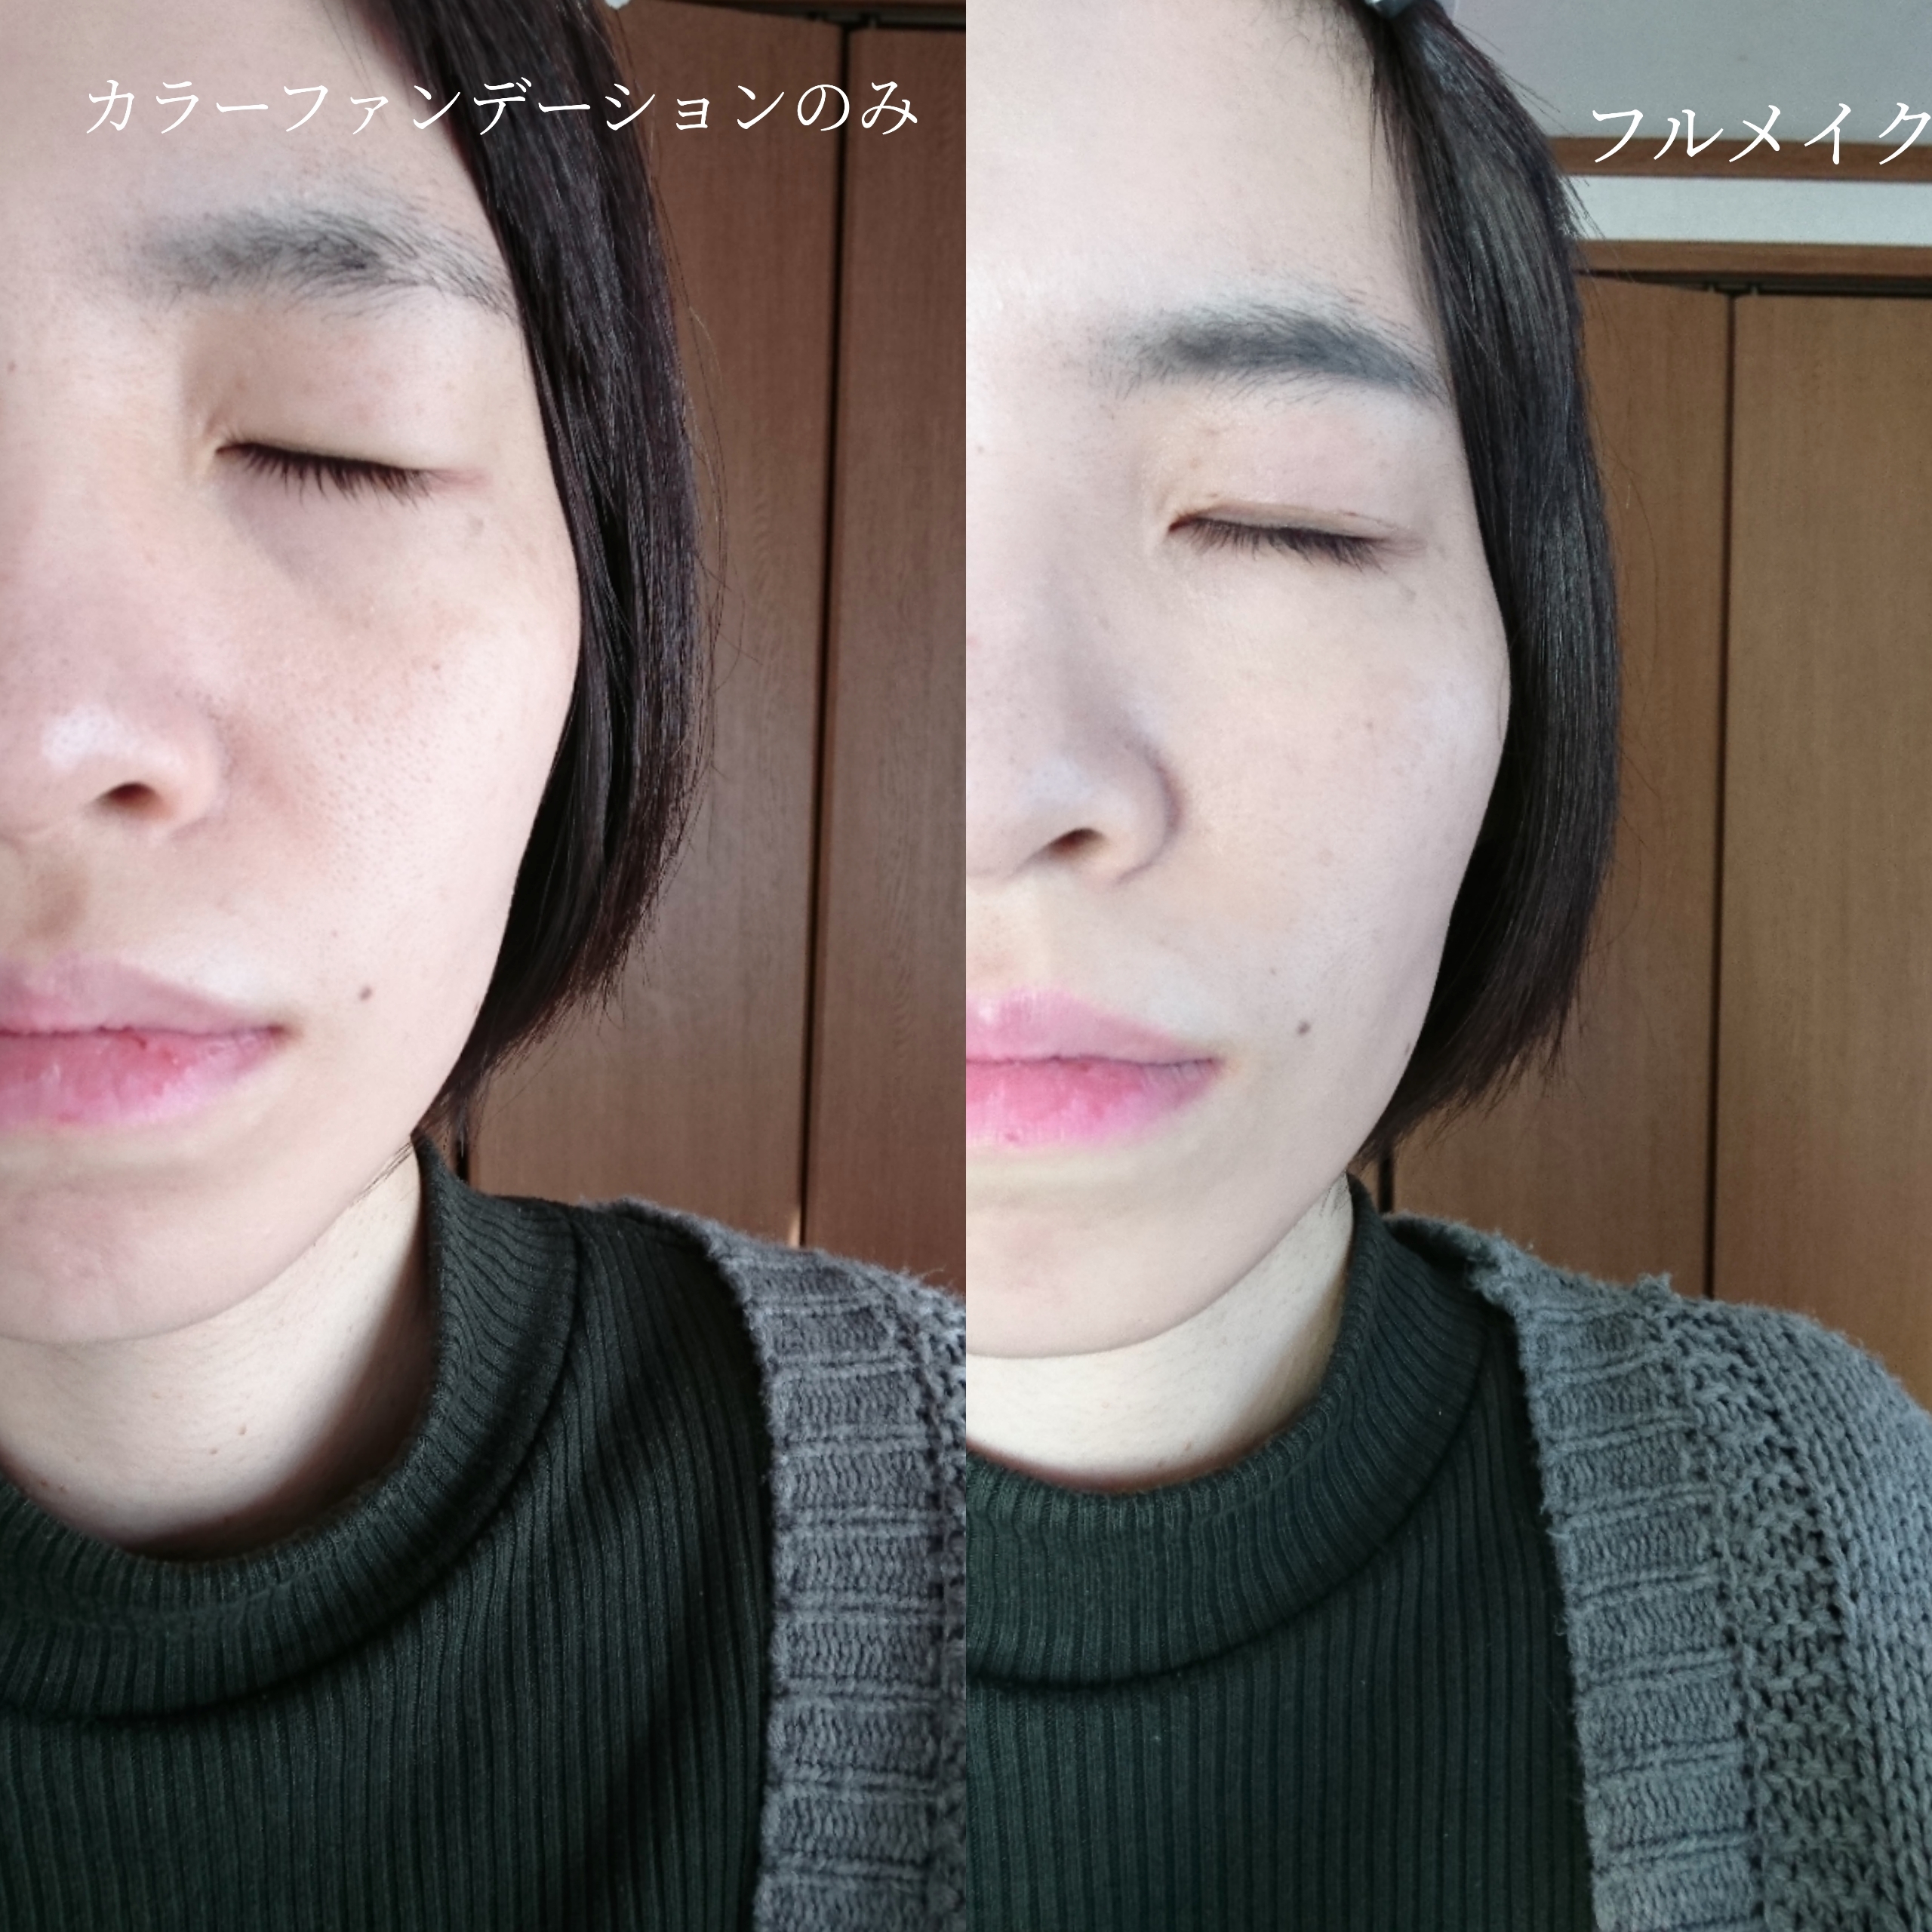 QUEI(クエイ)カラーチェンジファンデーションを使ったYuKaRi♡さんのクチコミ画像7